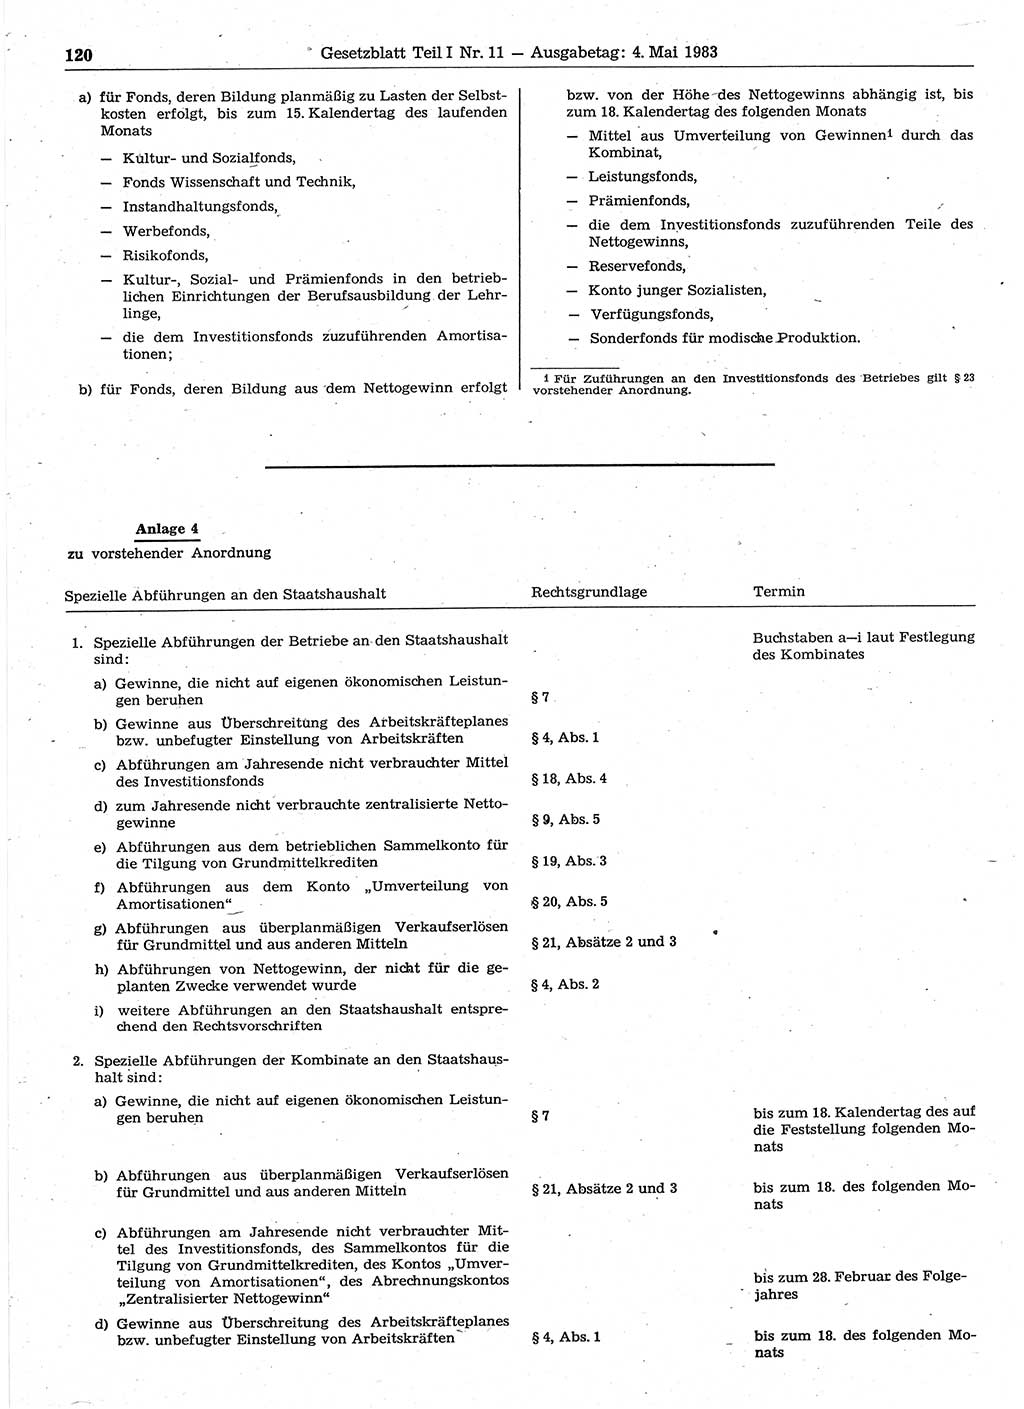 Gesetzblatt (GBl.) der Deutschen Demokratischen Republik (DDR) Teil Ⅰ 1983, Seite 120 (GBl. DDR Ⅰ 1983, S. 120)